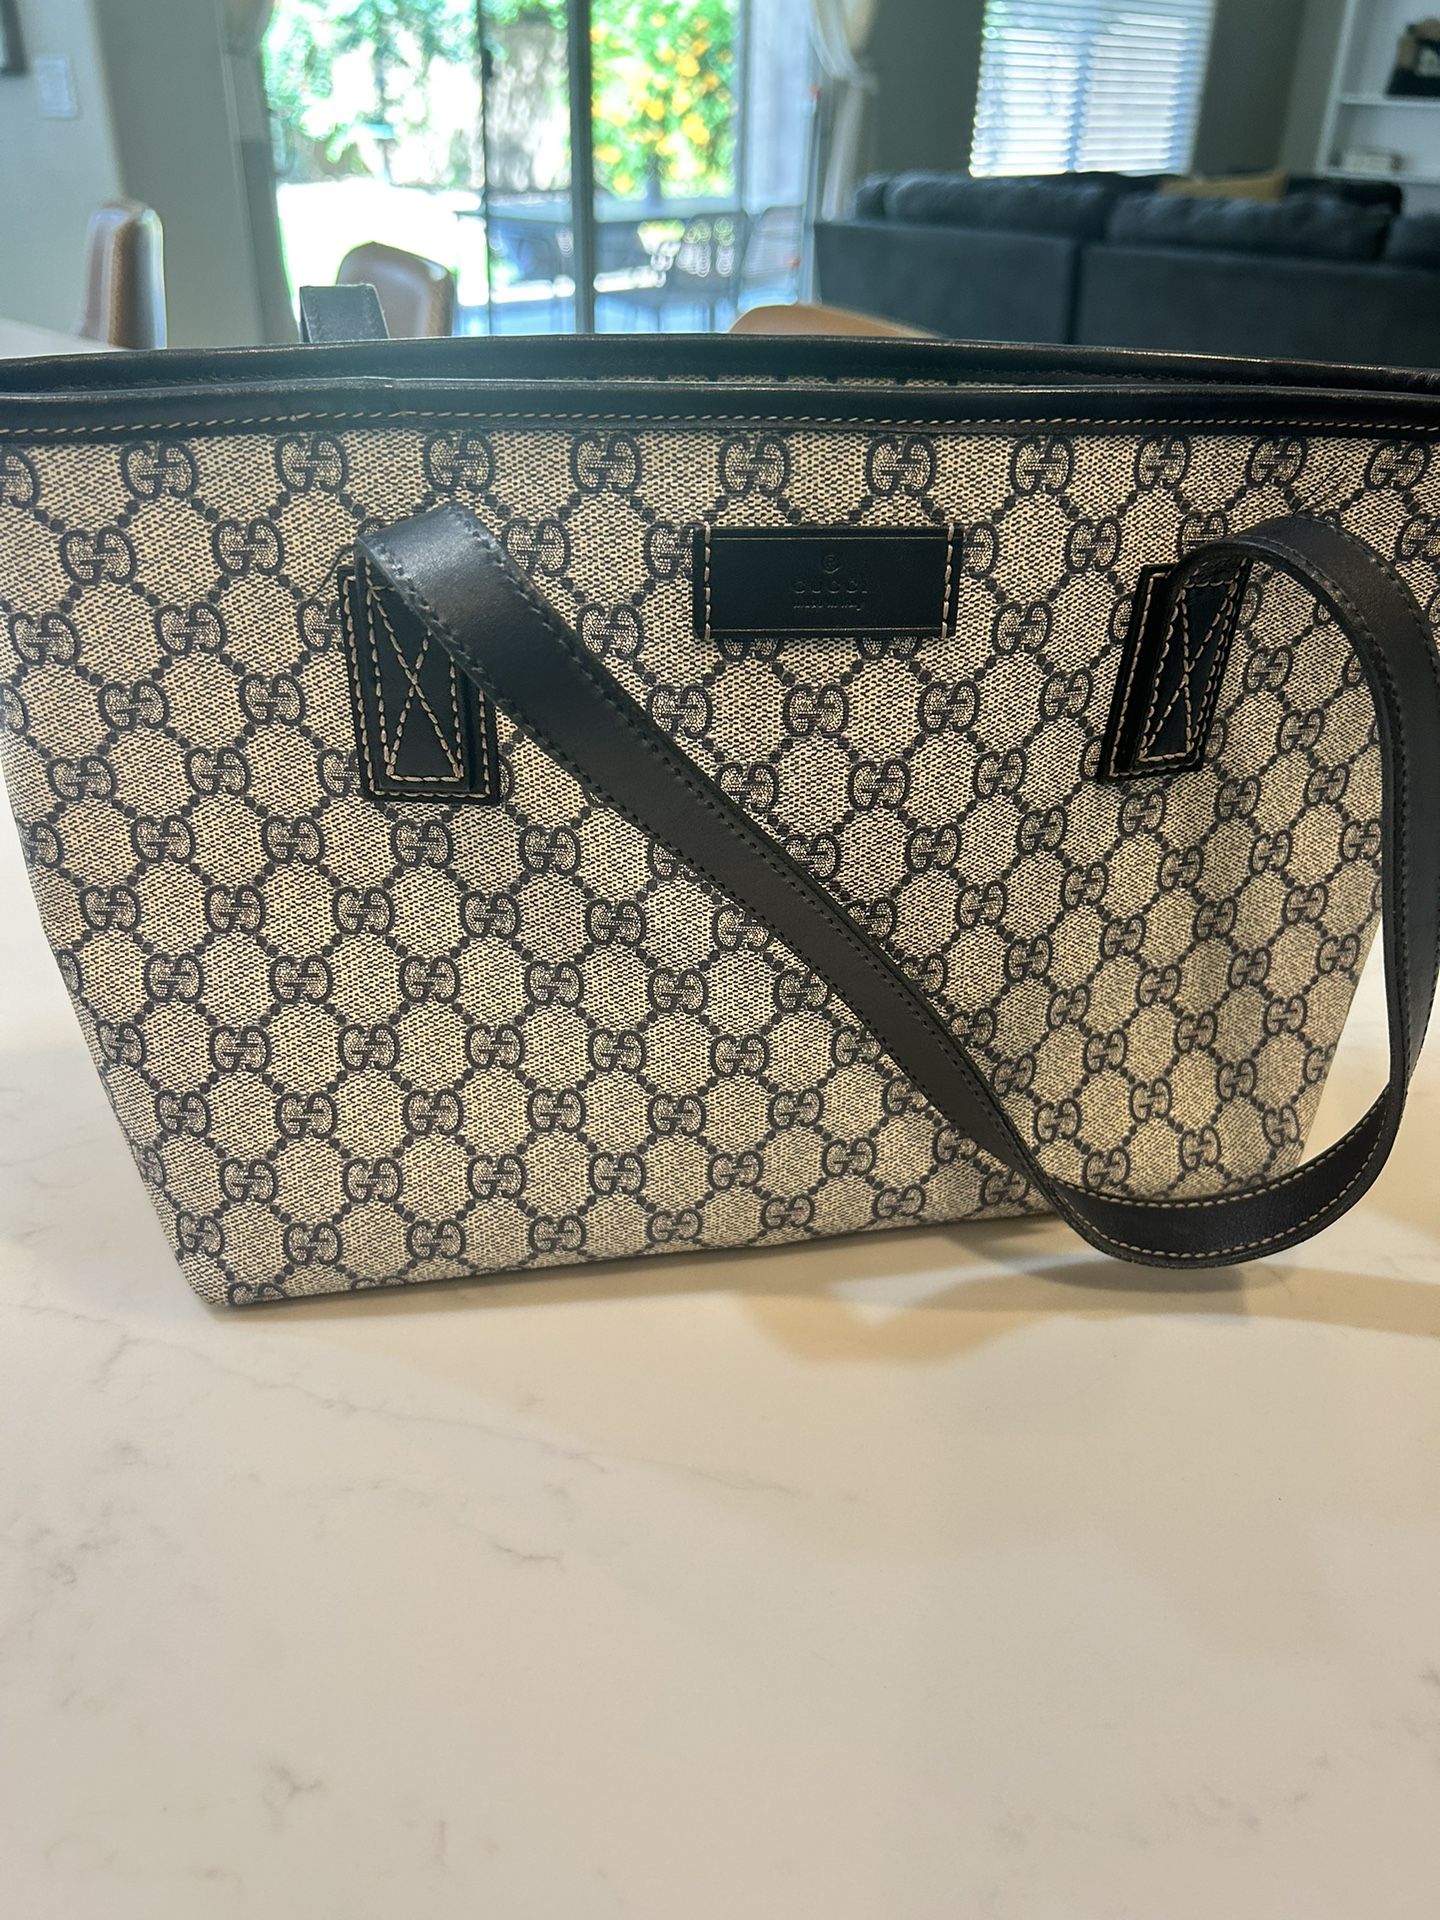 Gucci Canvas Bag - Authentic 